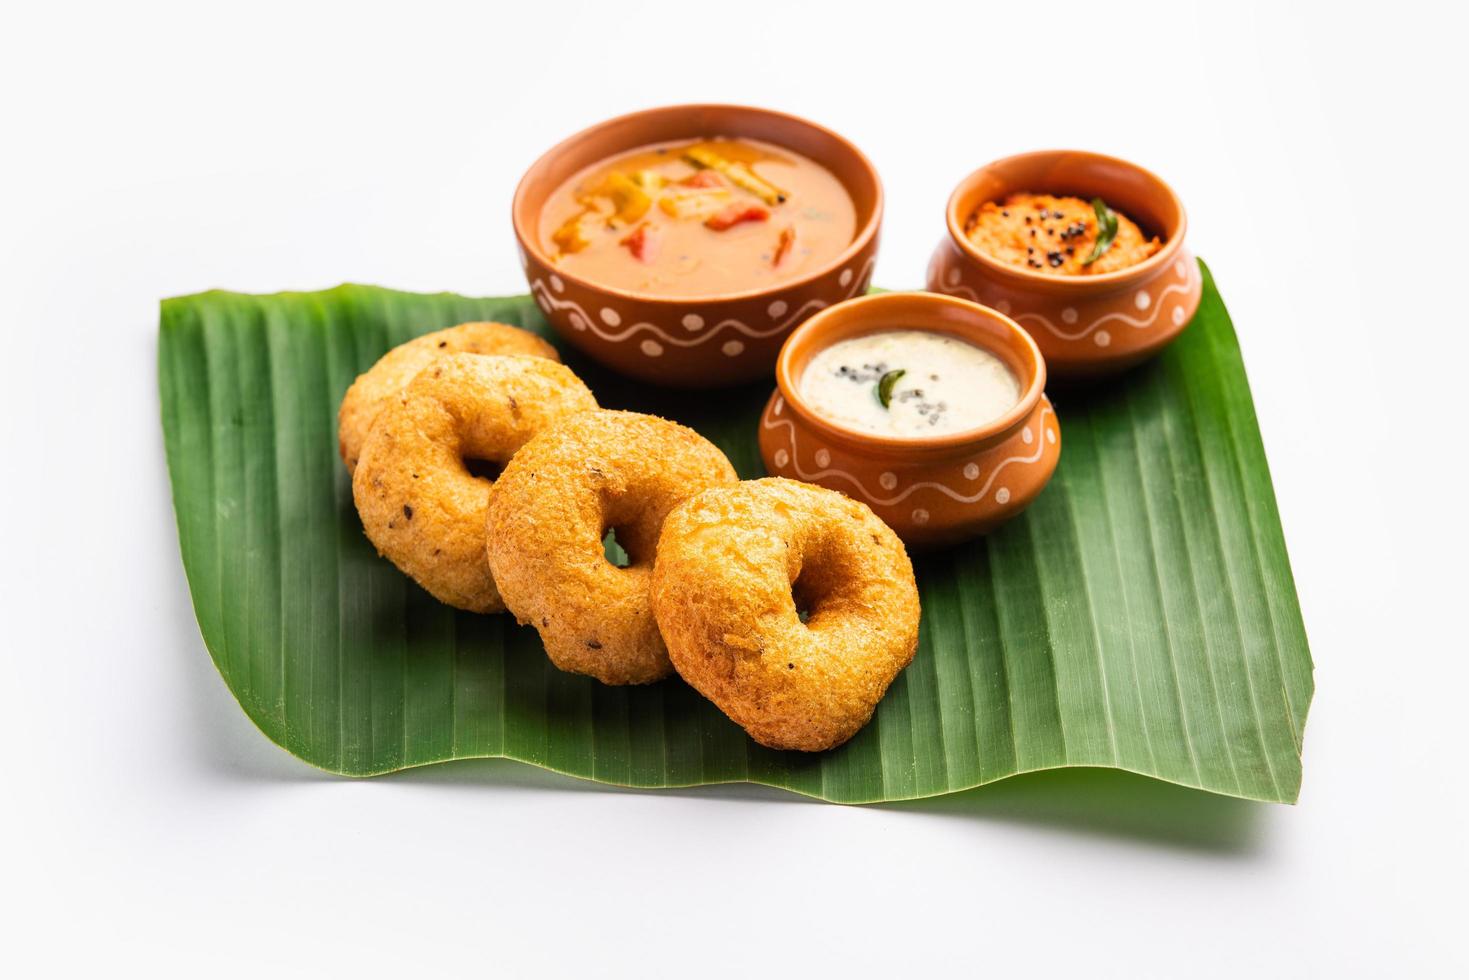 sambar vada of medu vada met sambhar en chutney - populair zuiden Indisch tussendoortje of ontbijt foto